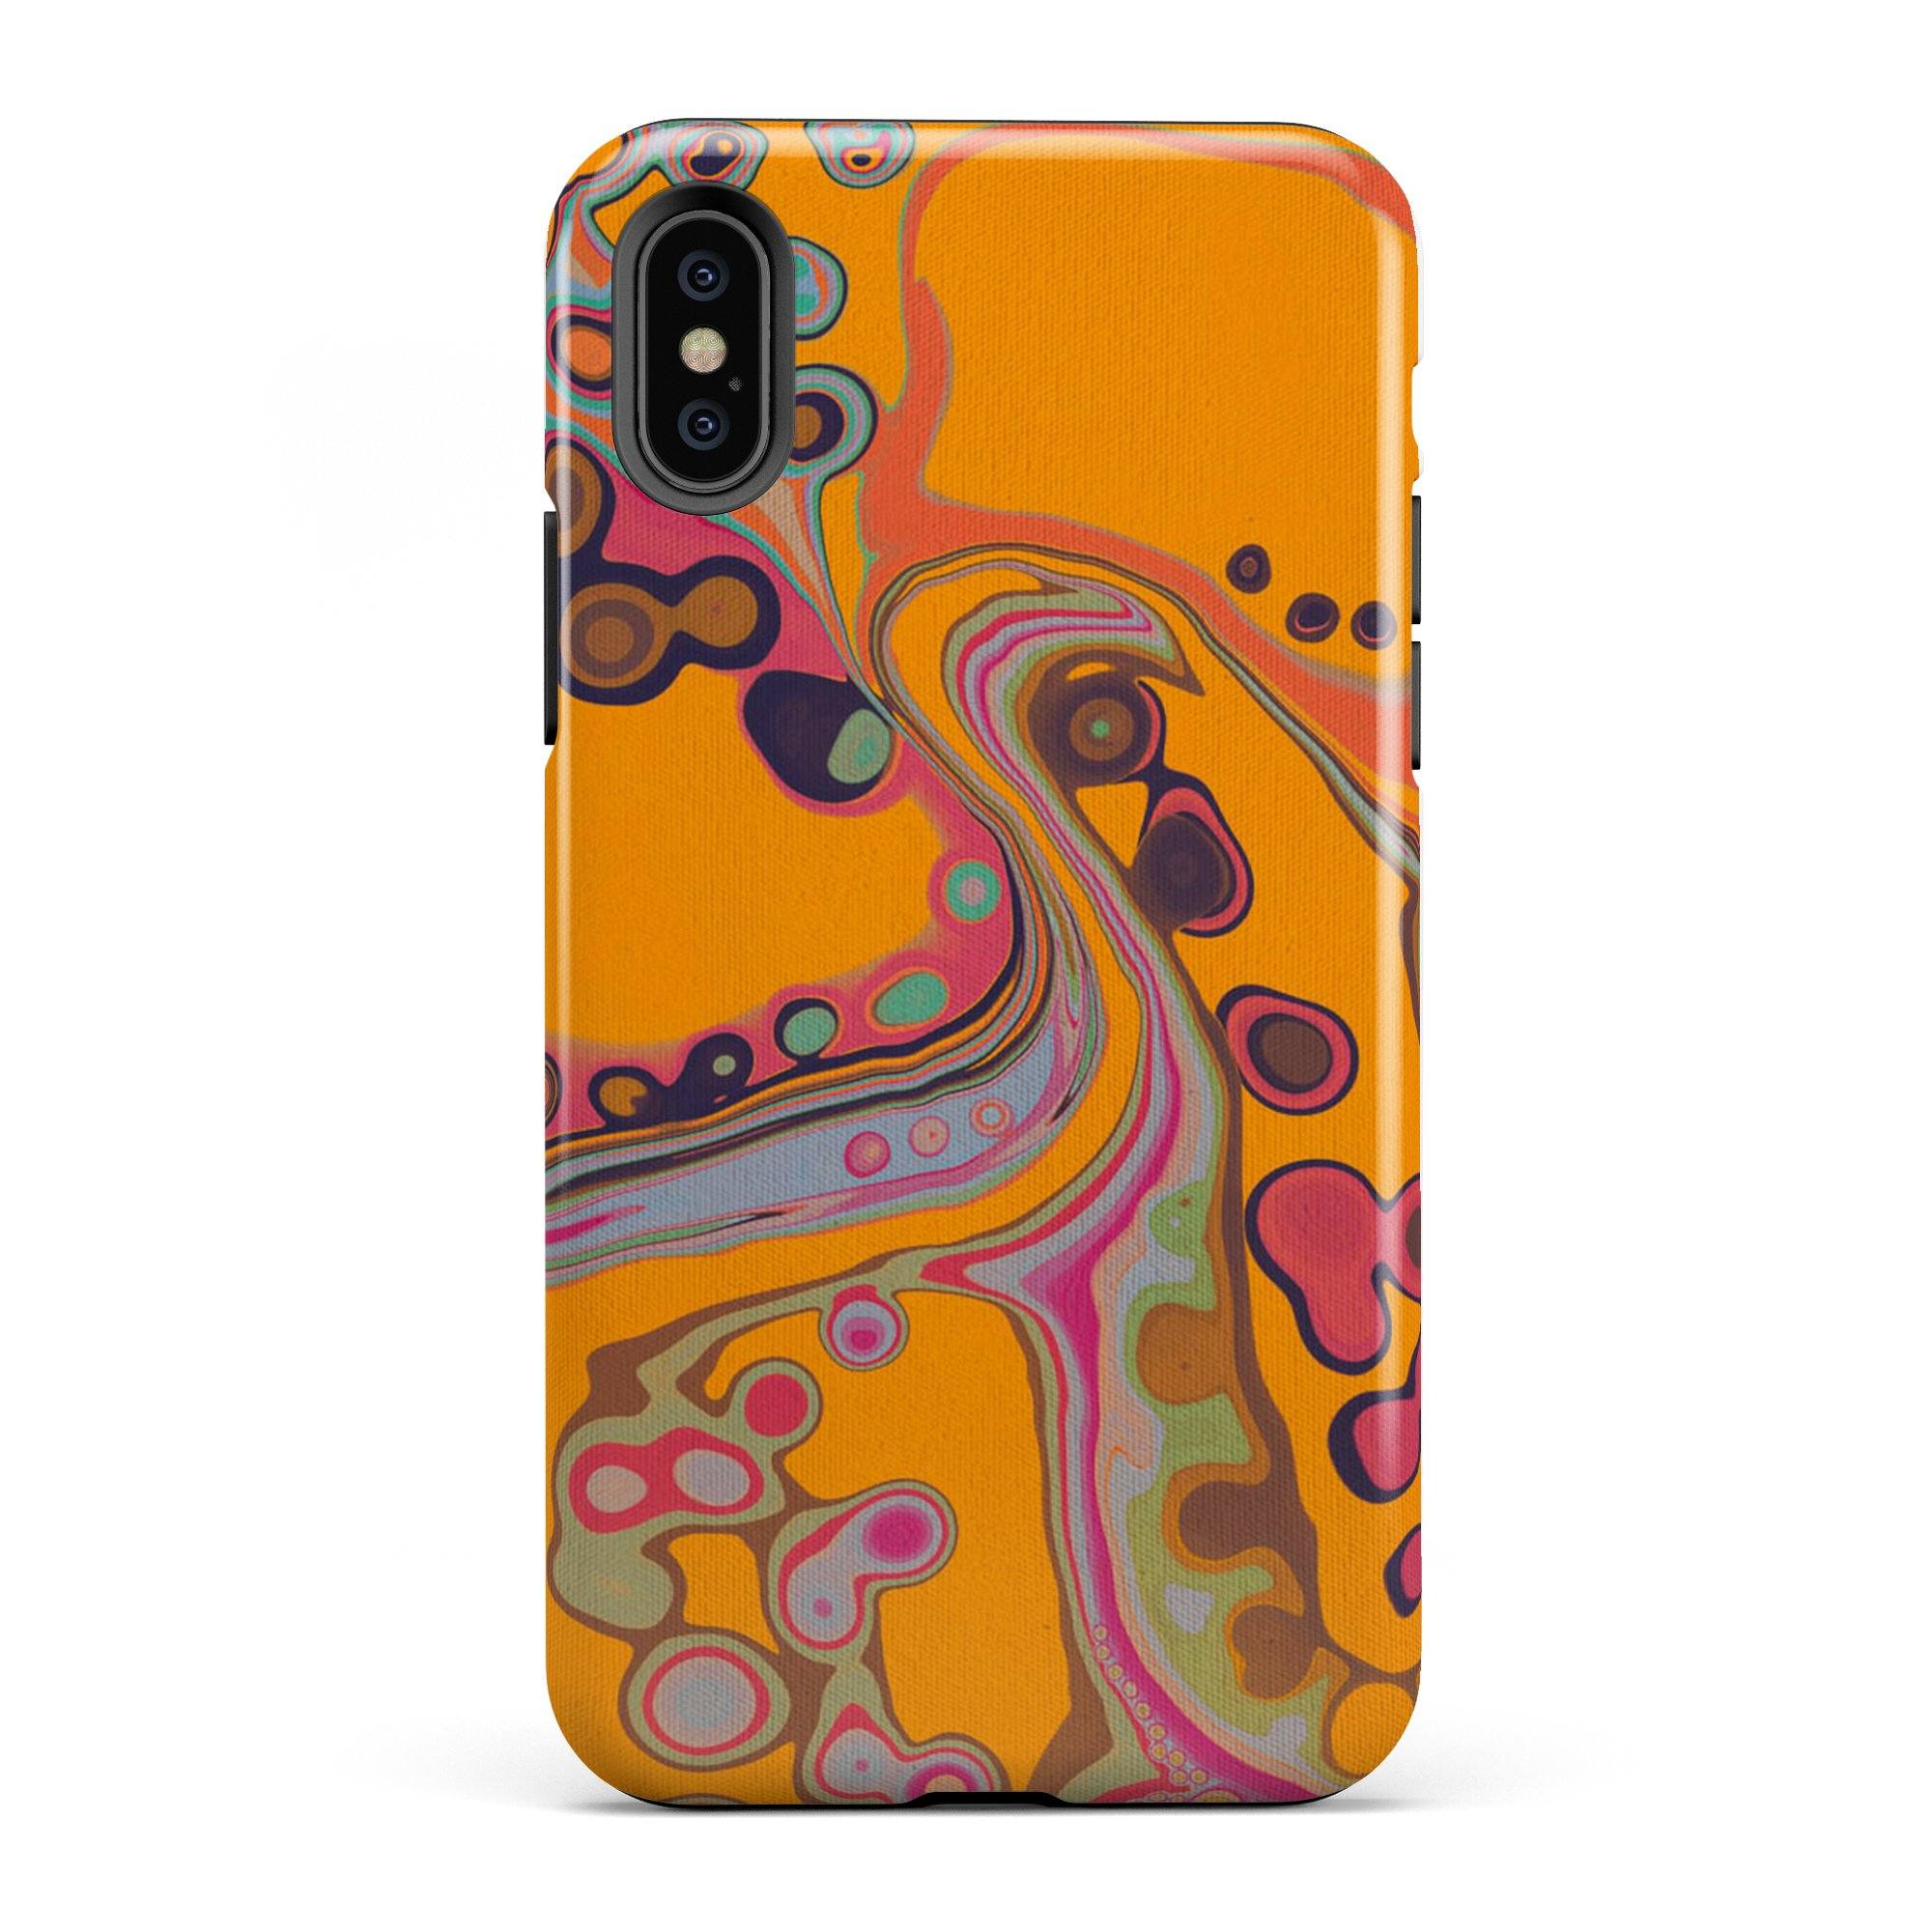 Octopus's Garden iPhone Case